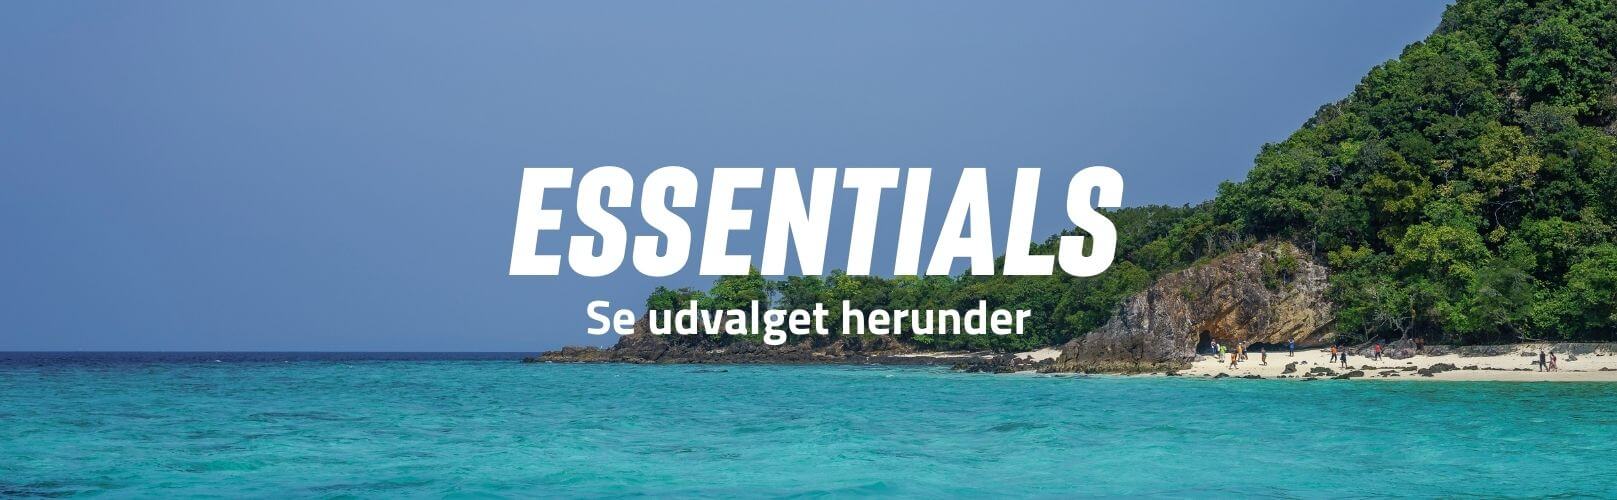 Essentials brand banner